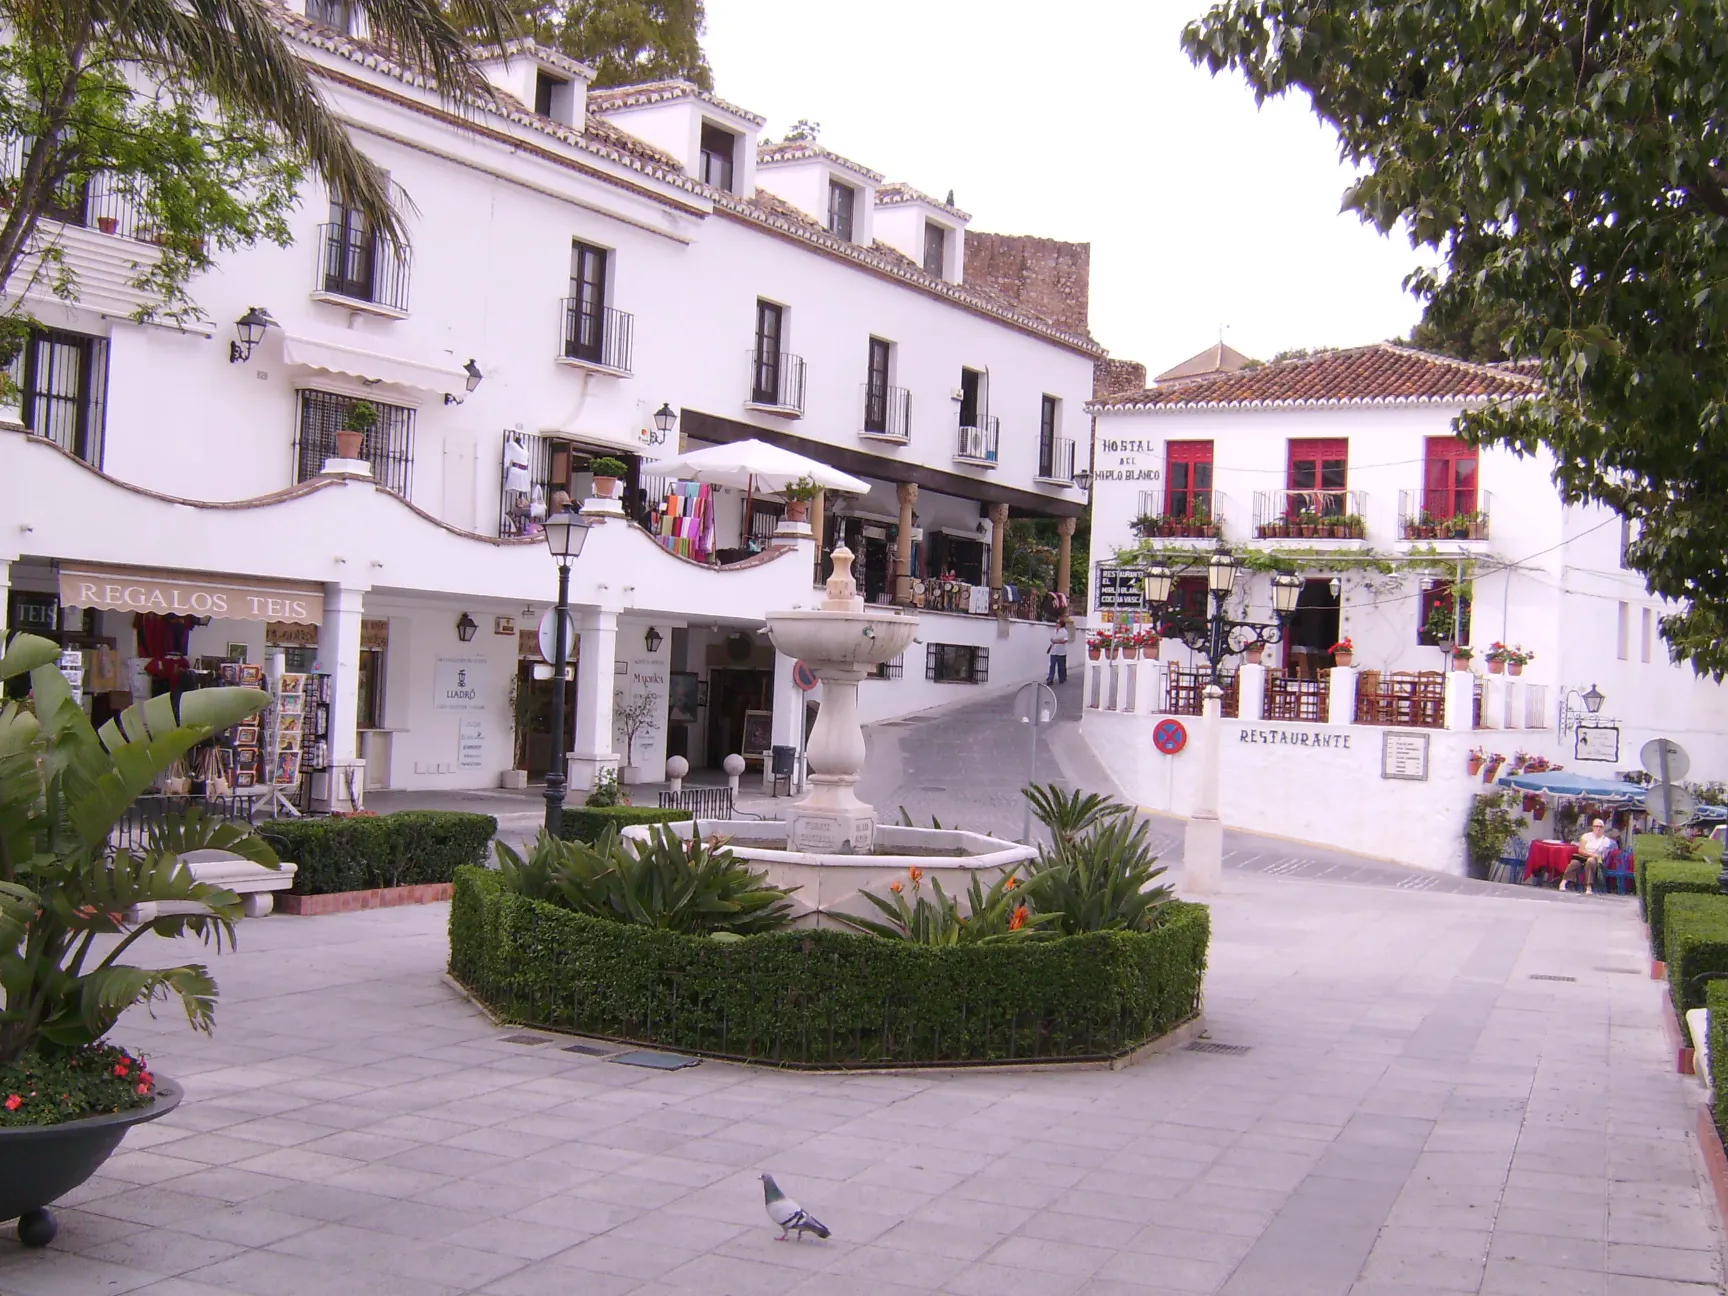 Plaza de la Constitución